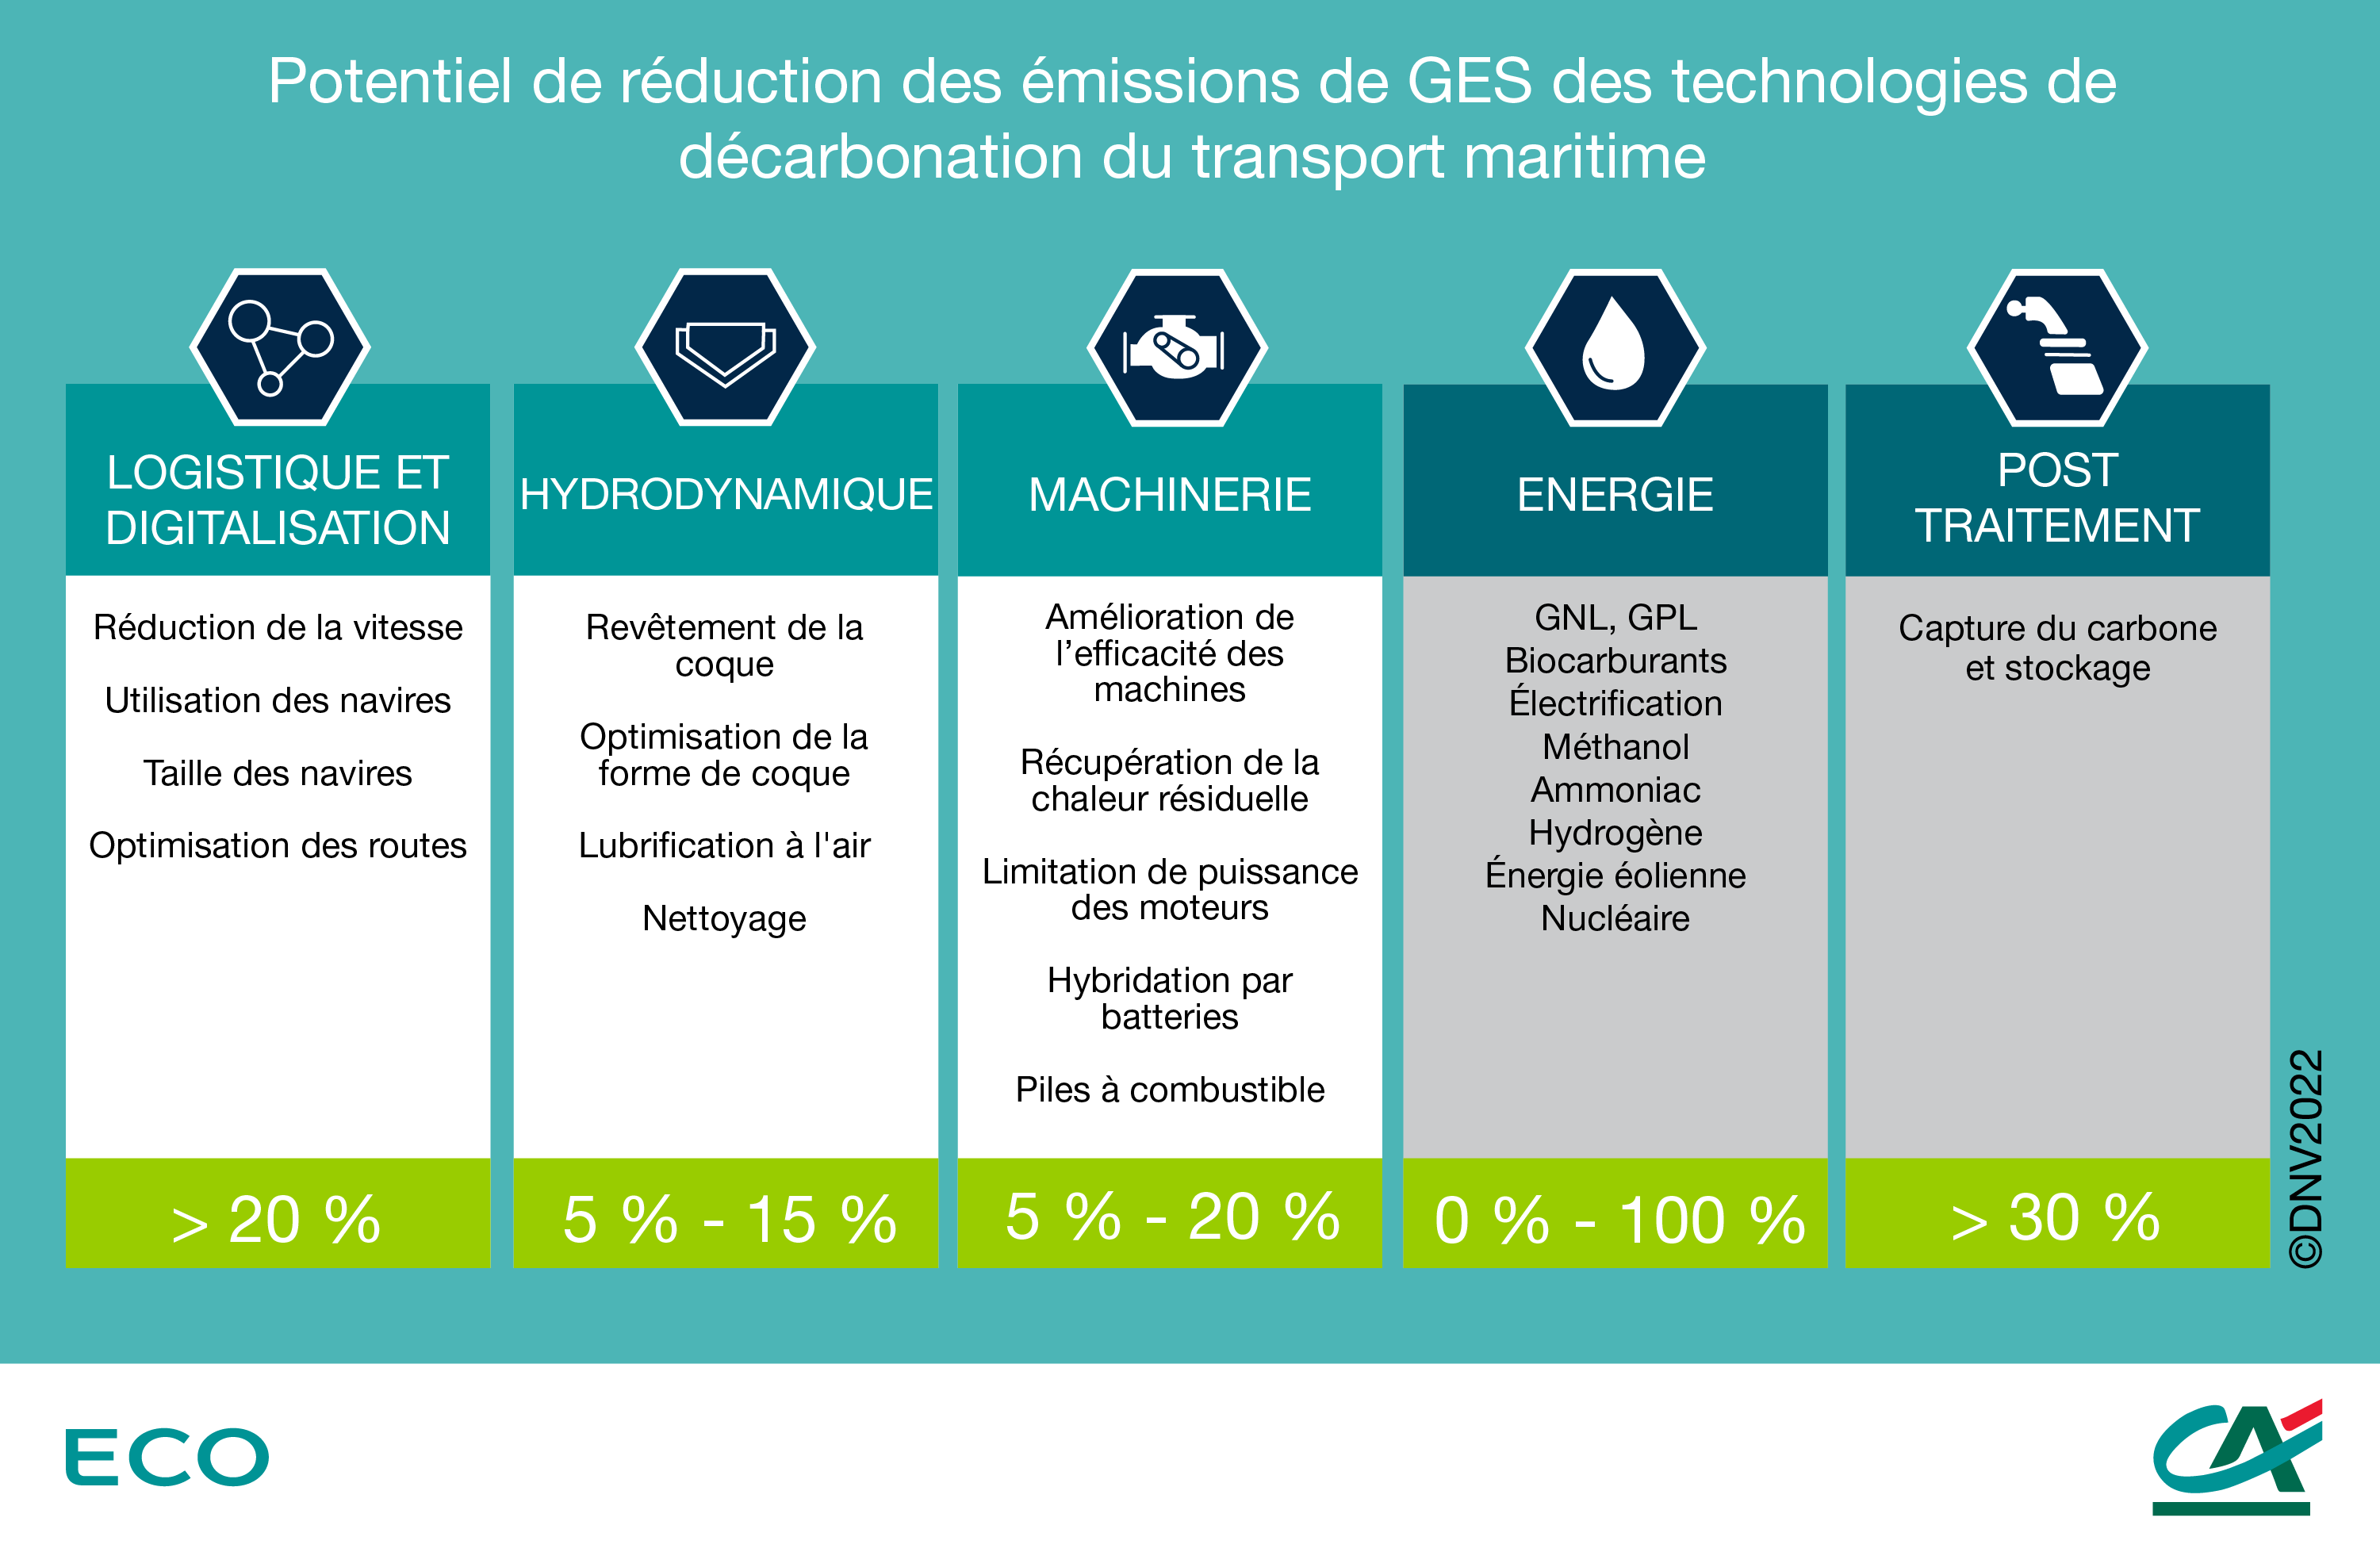 Potentiel de réduction des émissions de GES des technologies pouvant contribuer à la décarbonisation du transport maritime